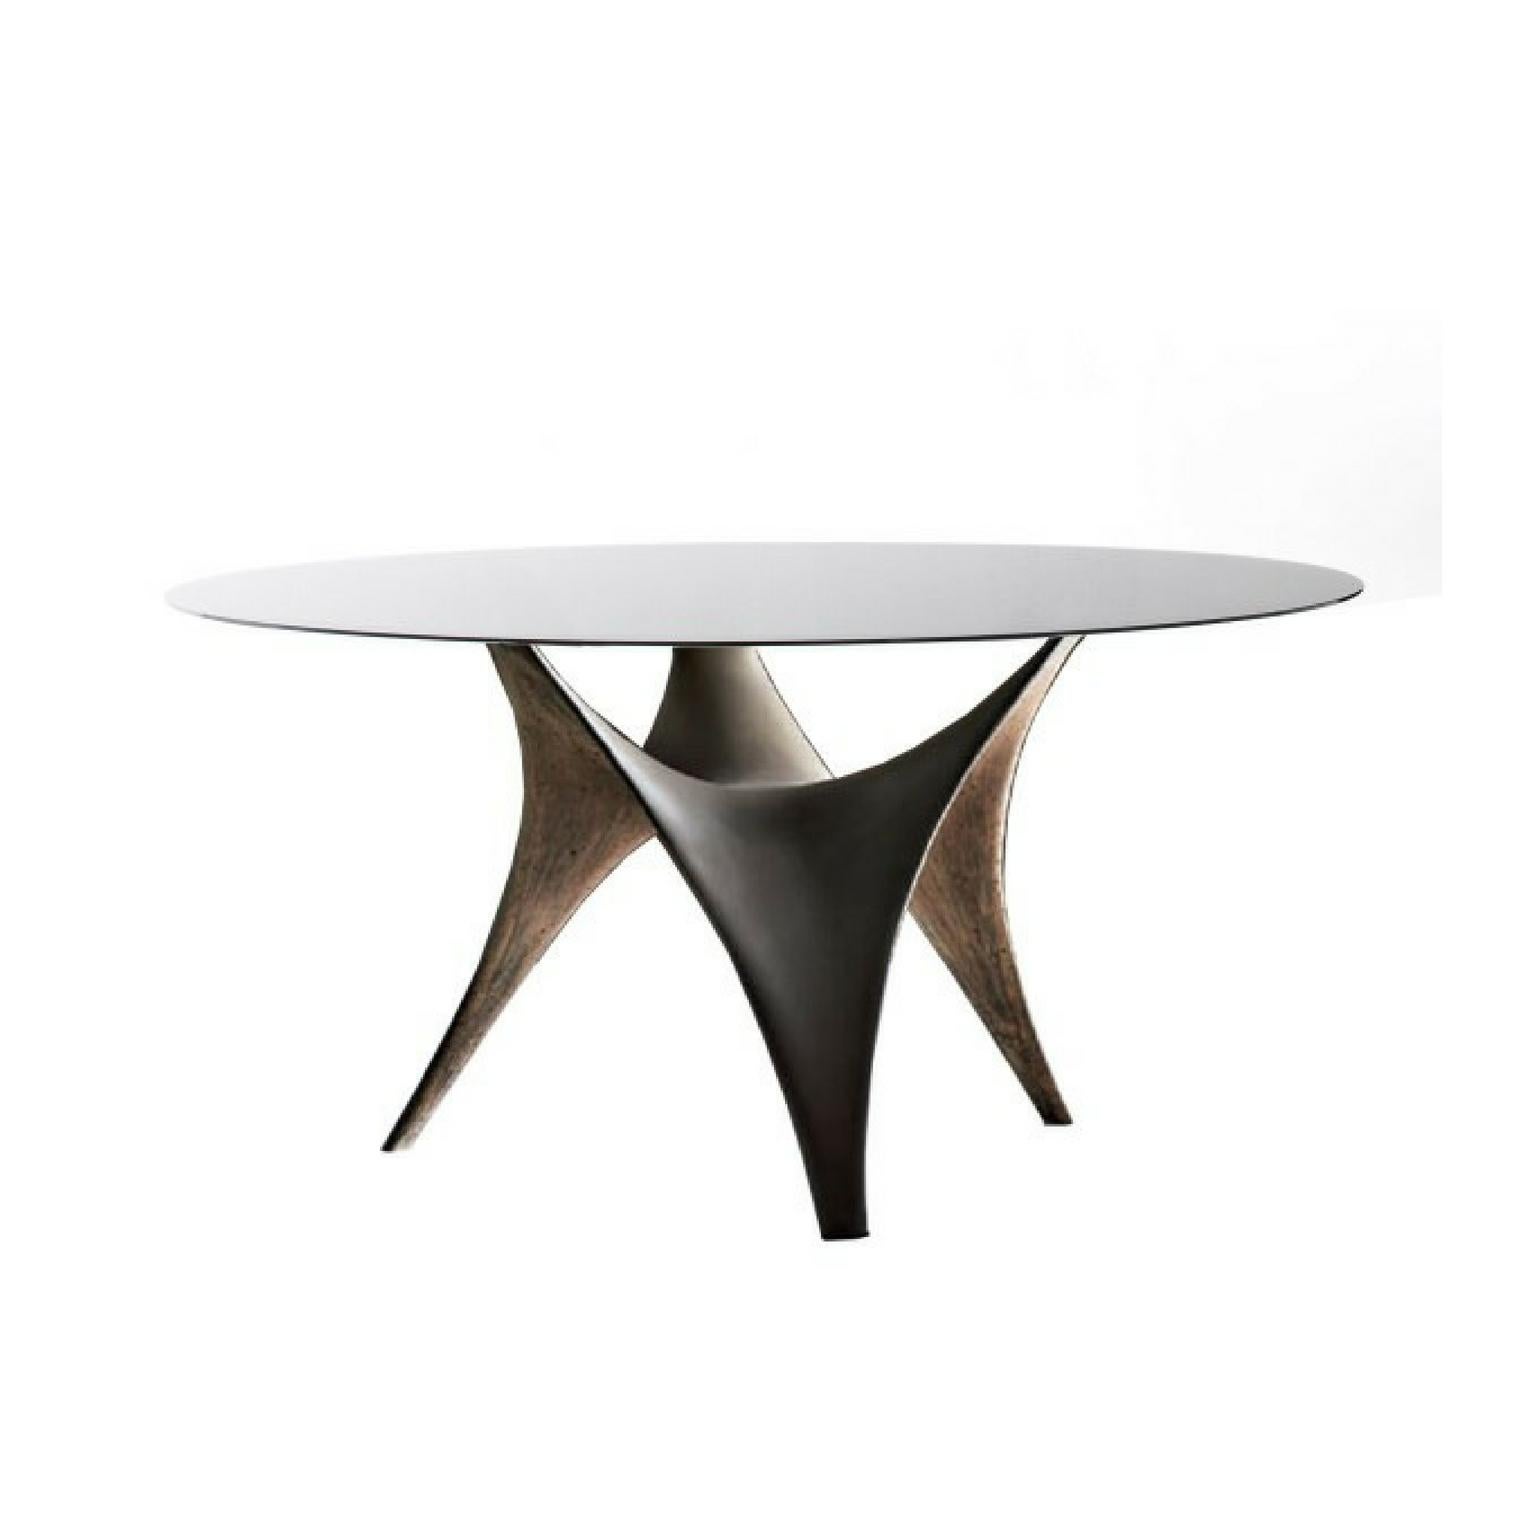 La table Arc incarne les concepts innovants qui la distinguent. La forme de la base s'inspire des technostructures actuellement utilisées dans la construction moderne : un nouveau ciment 